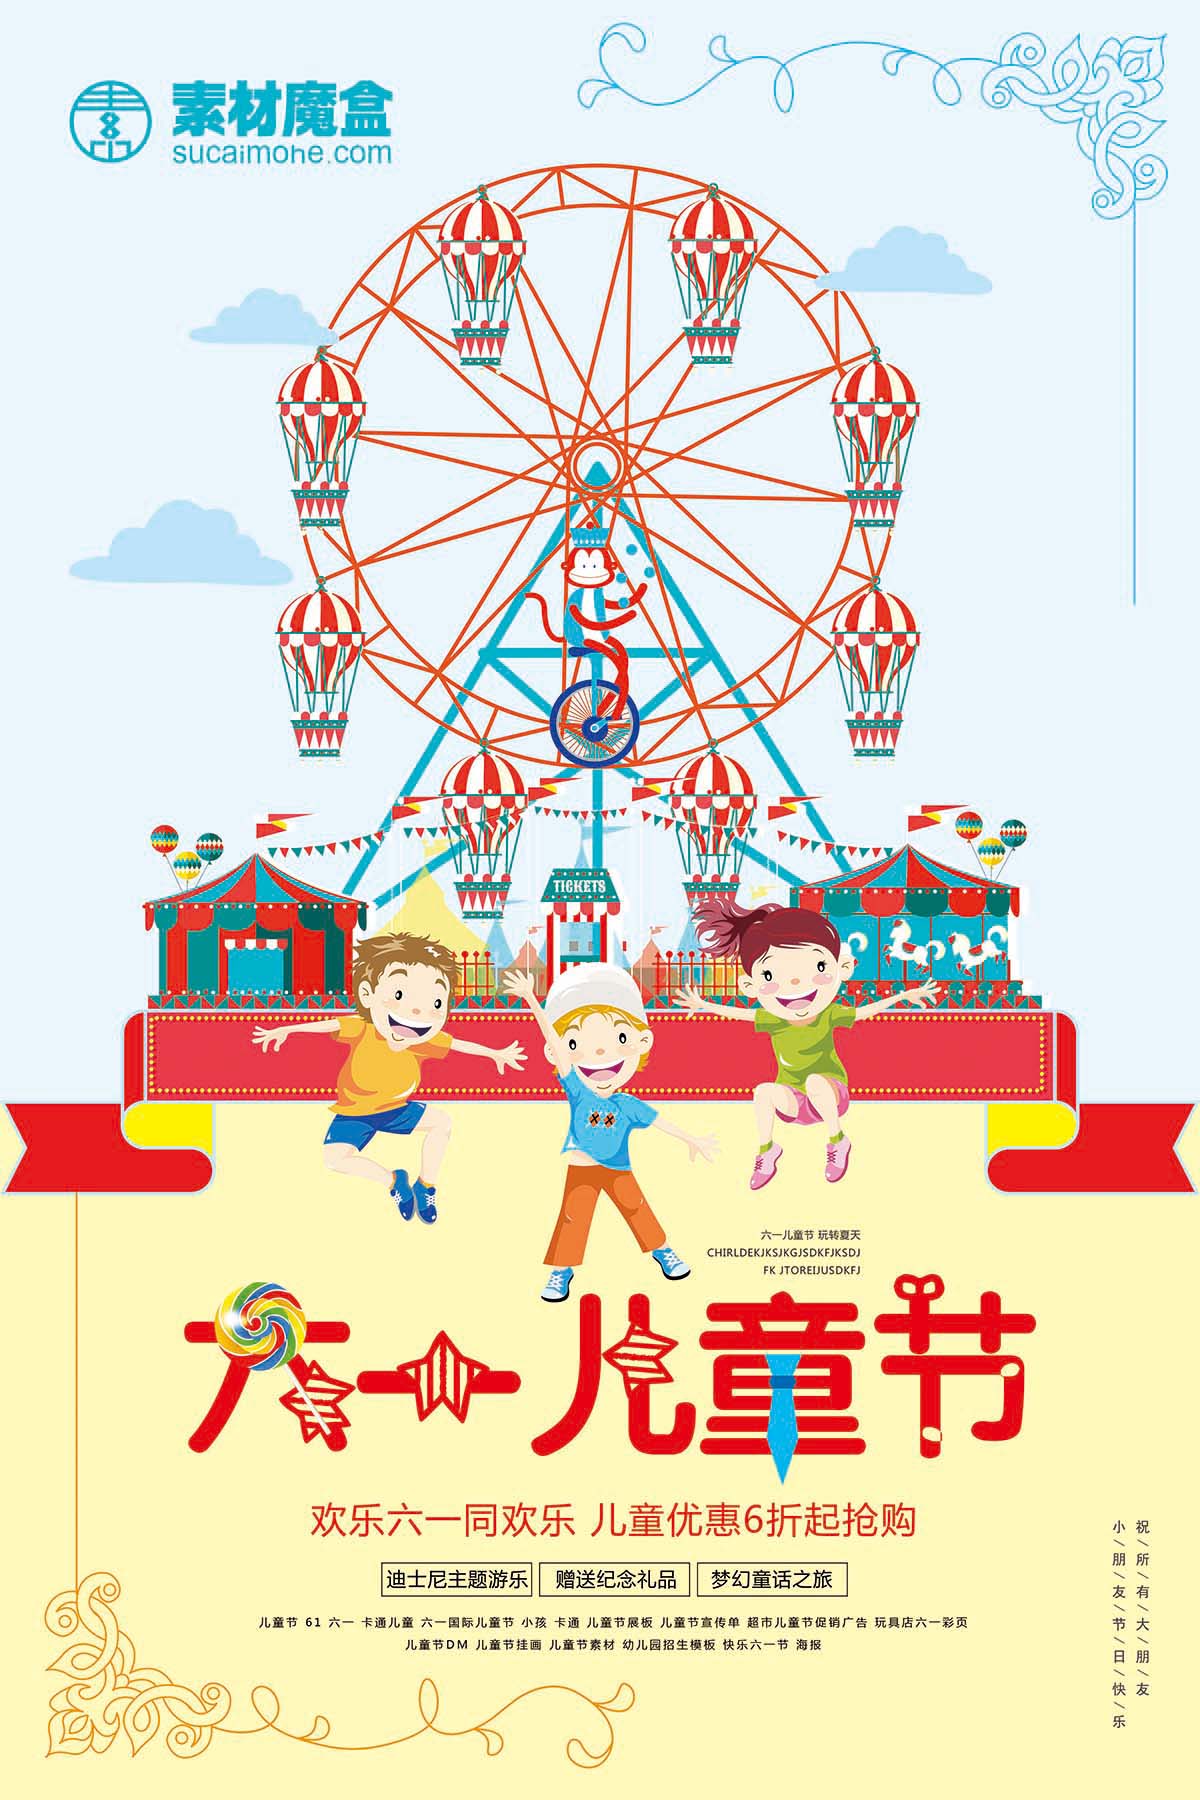 61六一儿童节6折优惠活动策划海报设计PSD源文件